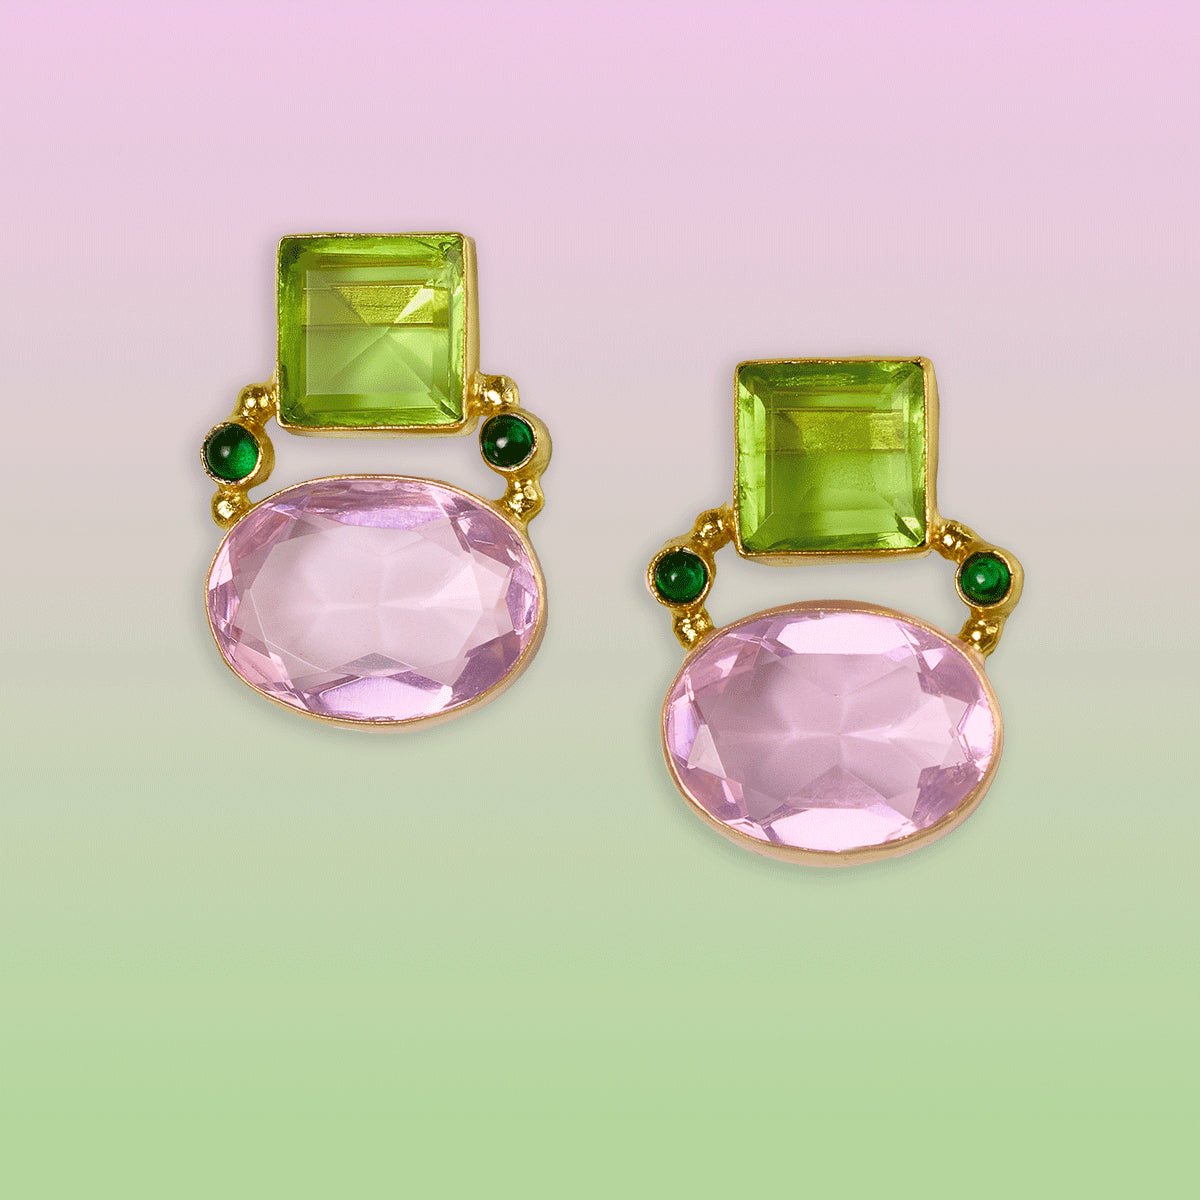 Berkley earrings in Pink and Mint Green